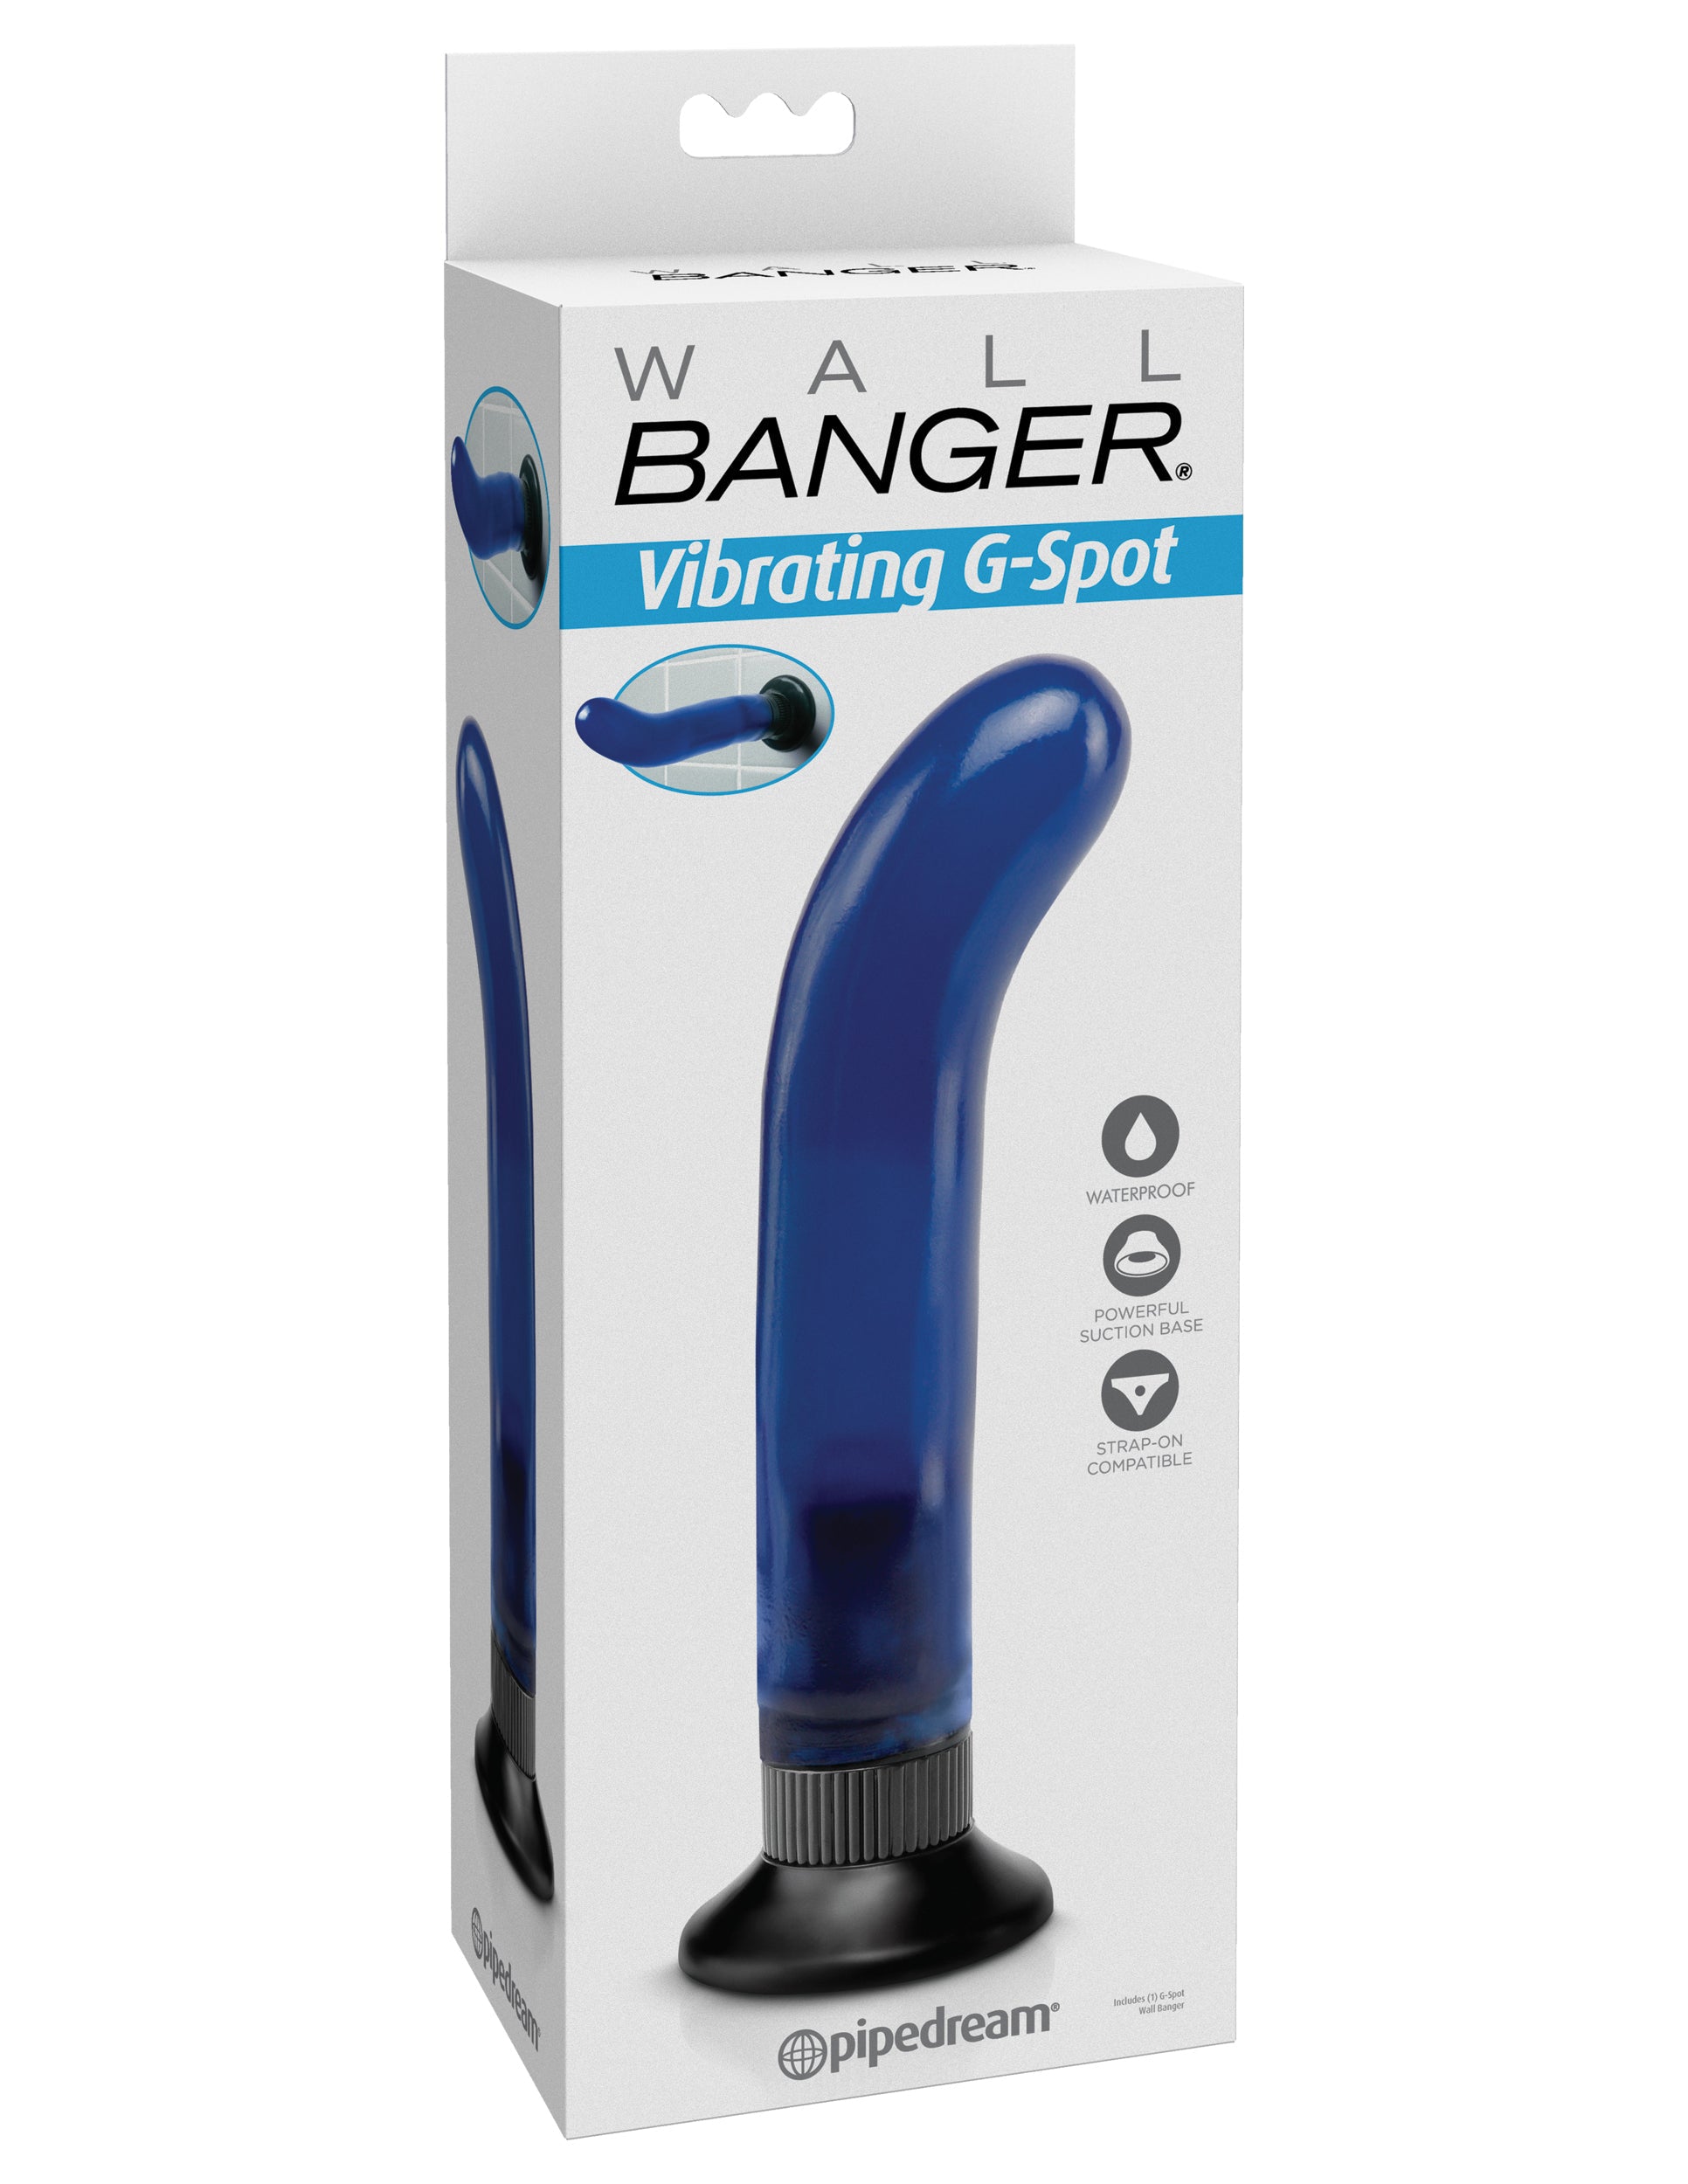 Wall Banger Vibrating G-Spot Vibrator - Blue